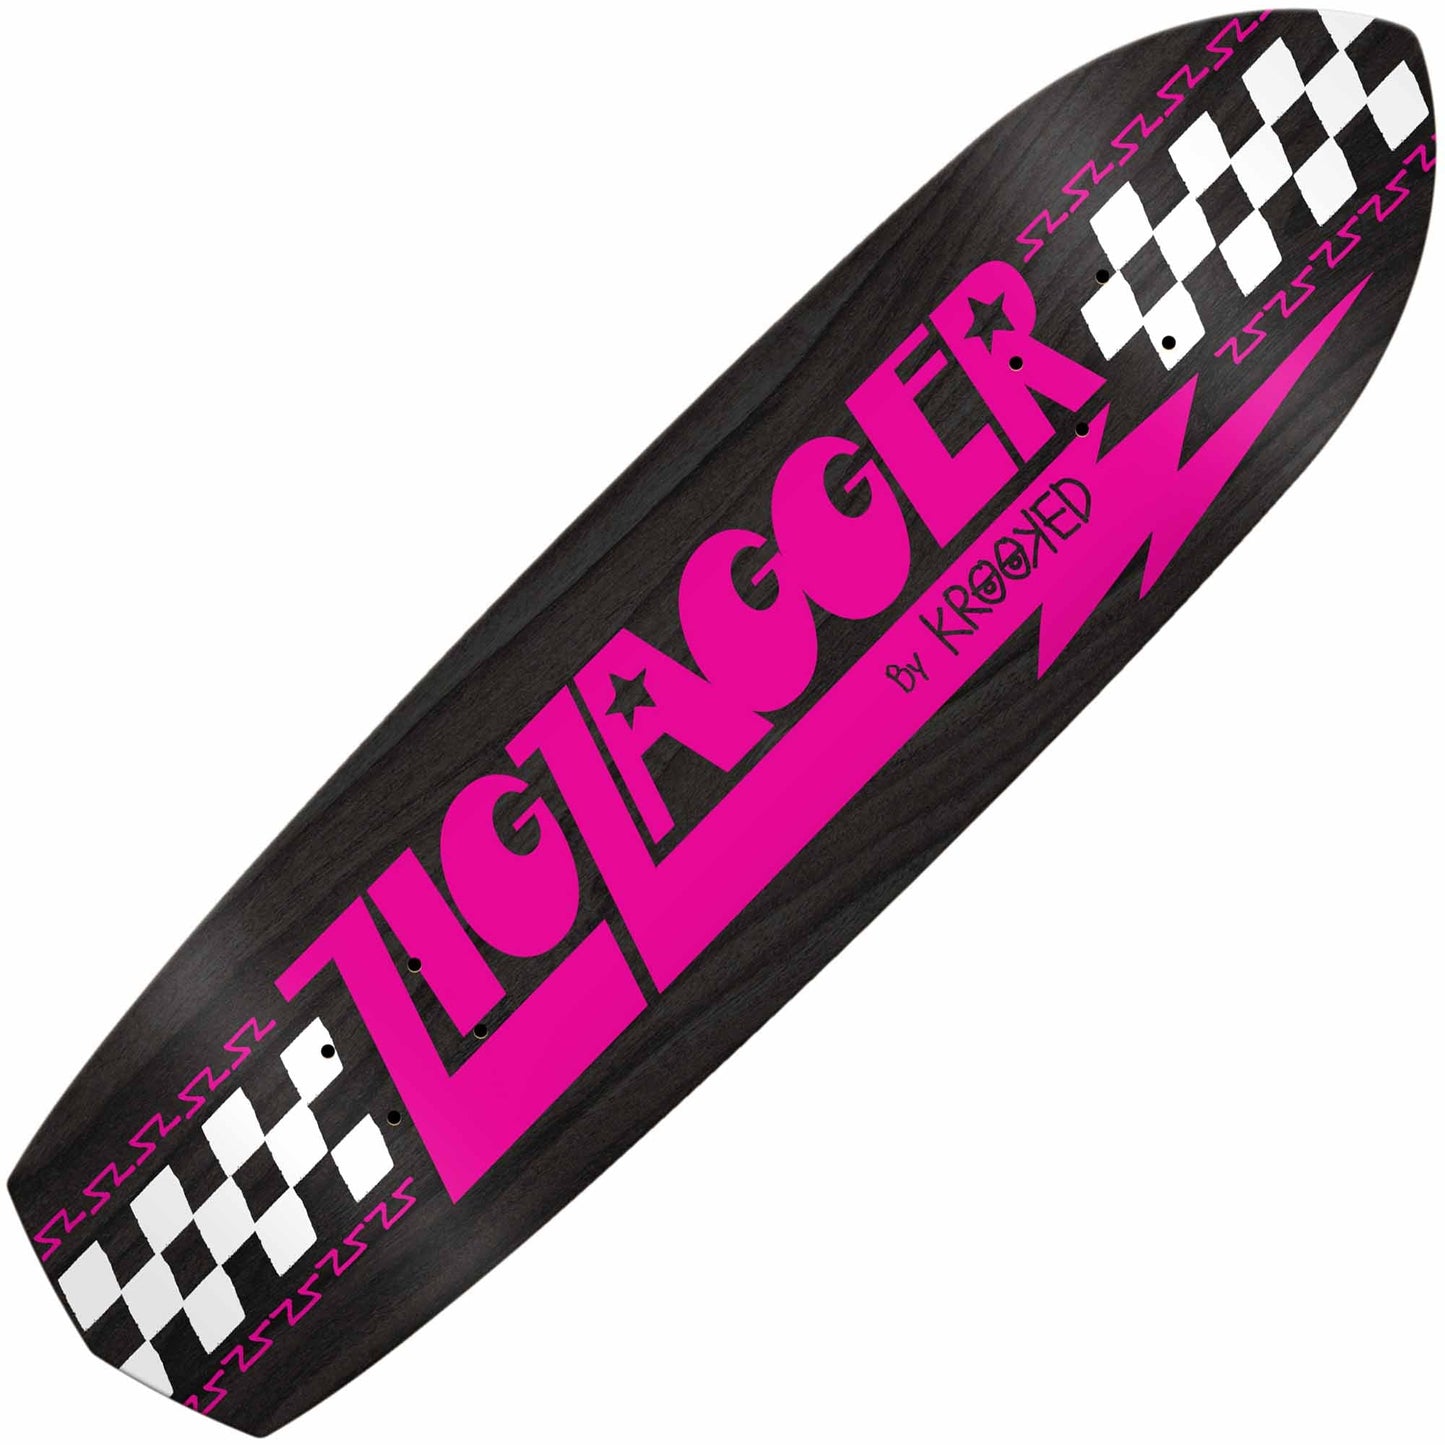 Krooked Zig Zagger OG Graphic Recolor Deck (8.625"), pink - Tiki Room Skateboards - 1